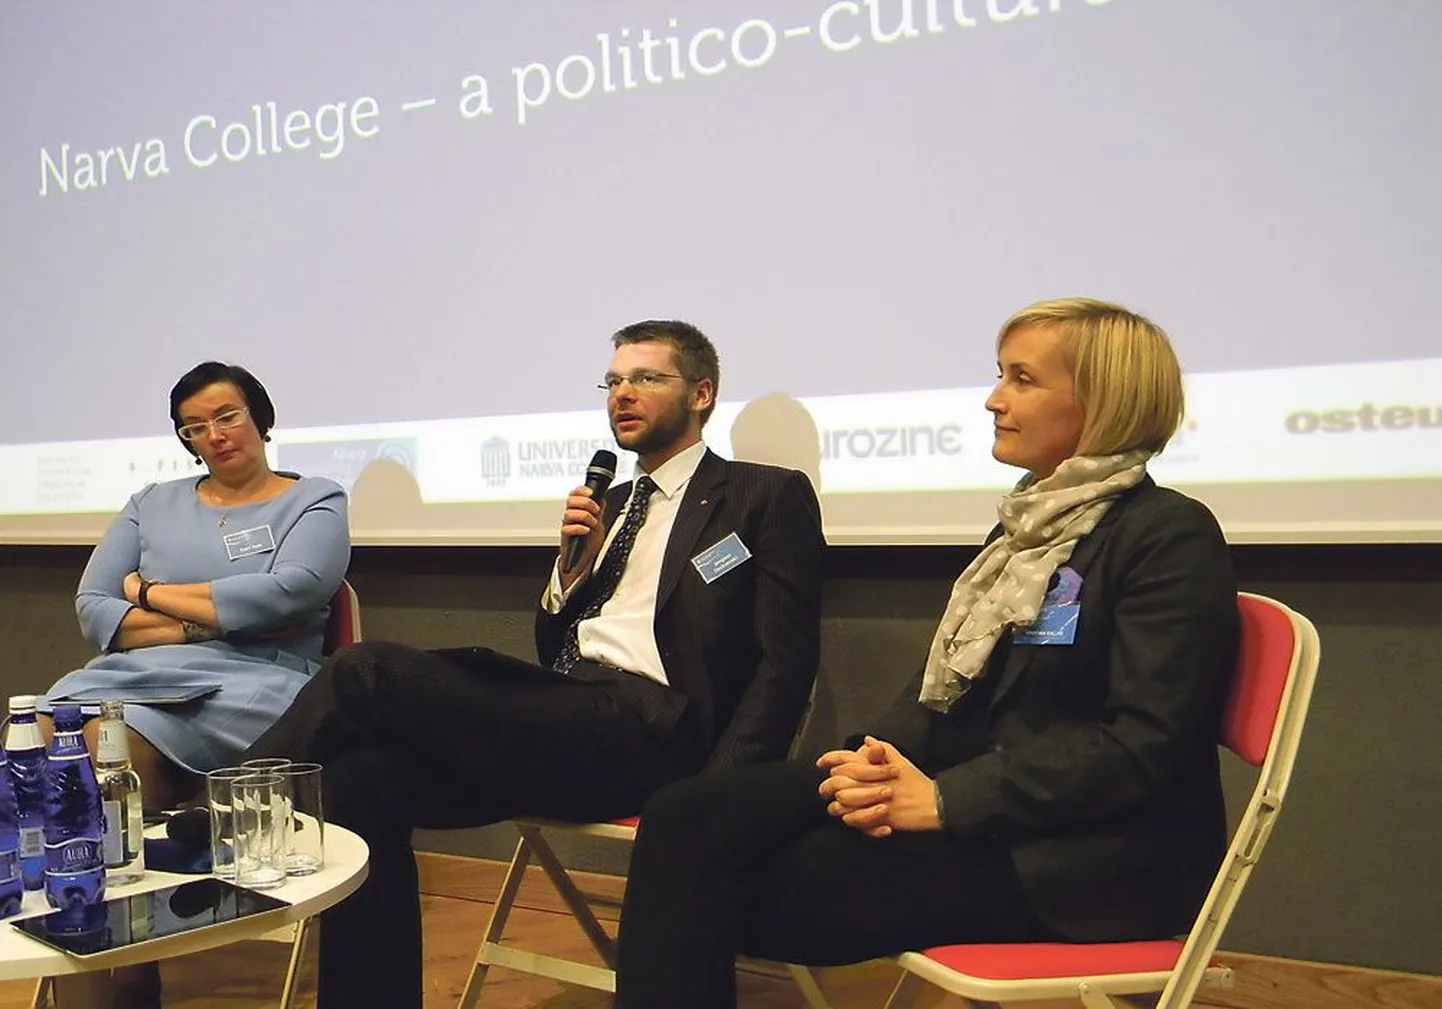 Катри Райк, Евгений Осиновский и Кристина Каллас участвуют в дискуссии о роли Нарвского колледжа как общественного центра 
пограничного города.